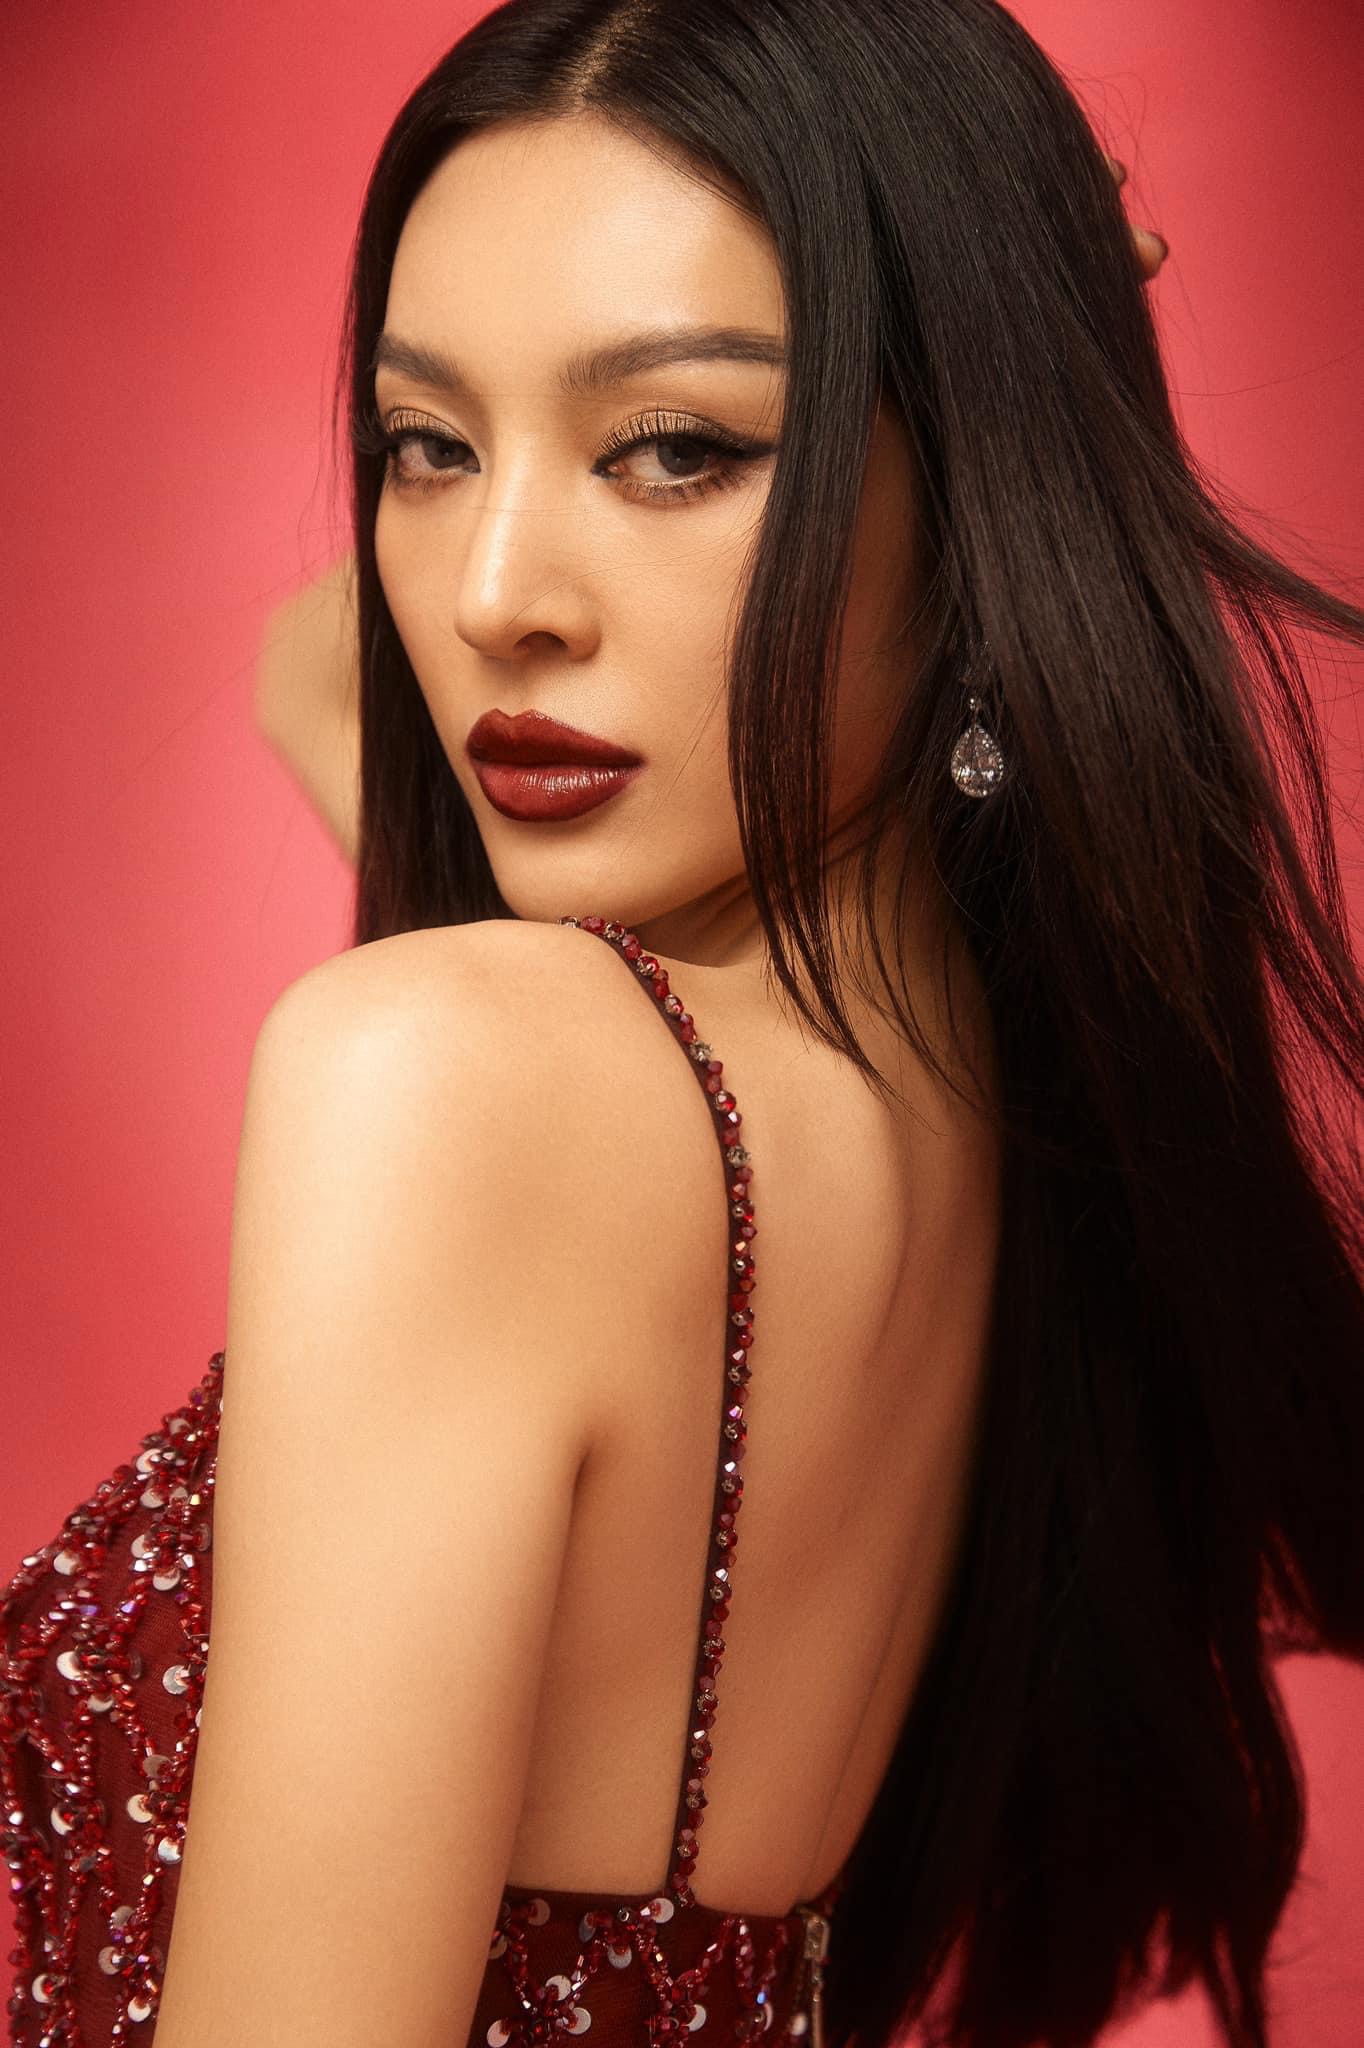 Những điều mới lạ giúp Miss Grand Vietnam trở thành cuộc thi nhan sắc đáng mong đợi - Ảnh 8.